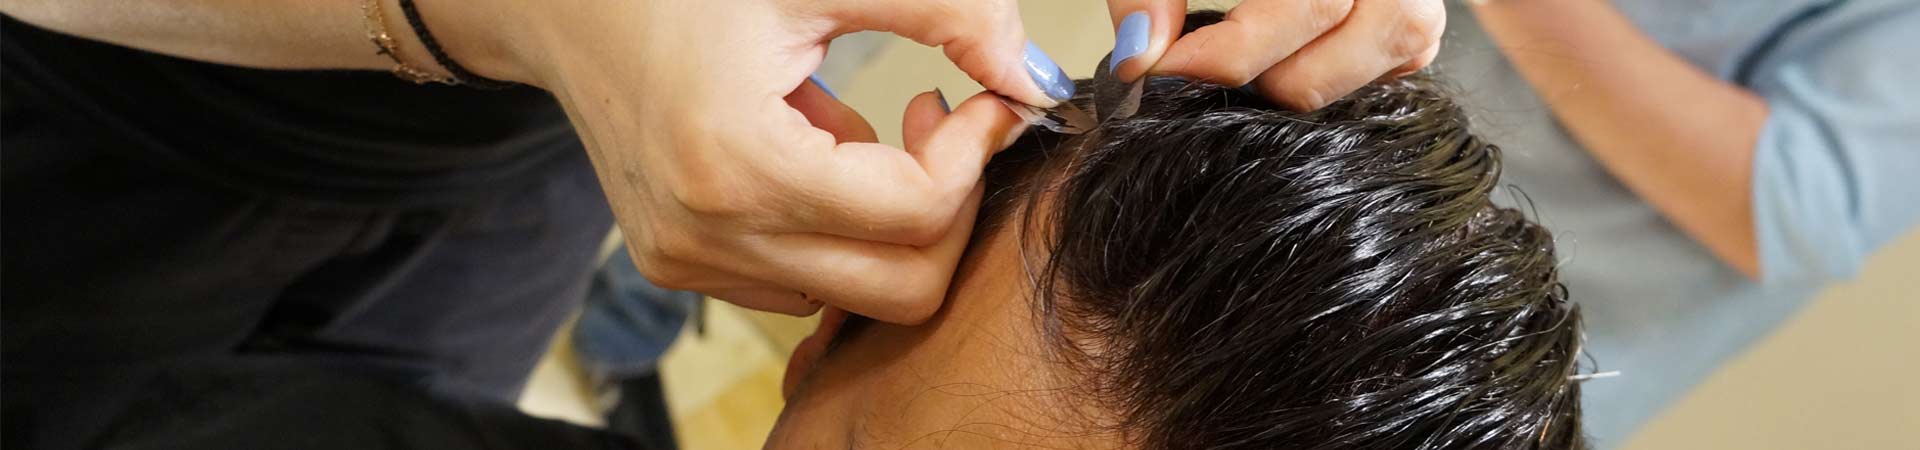 Υπηρεσίες Προσθετικής Μαλλιών για Άνδρες – Συντήρηση